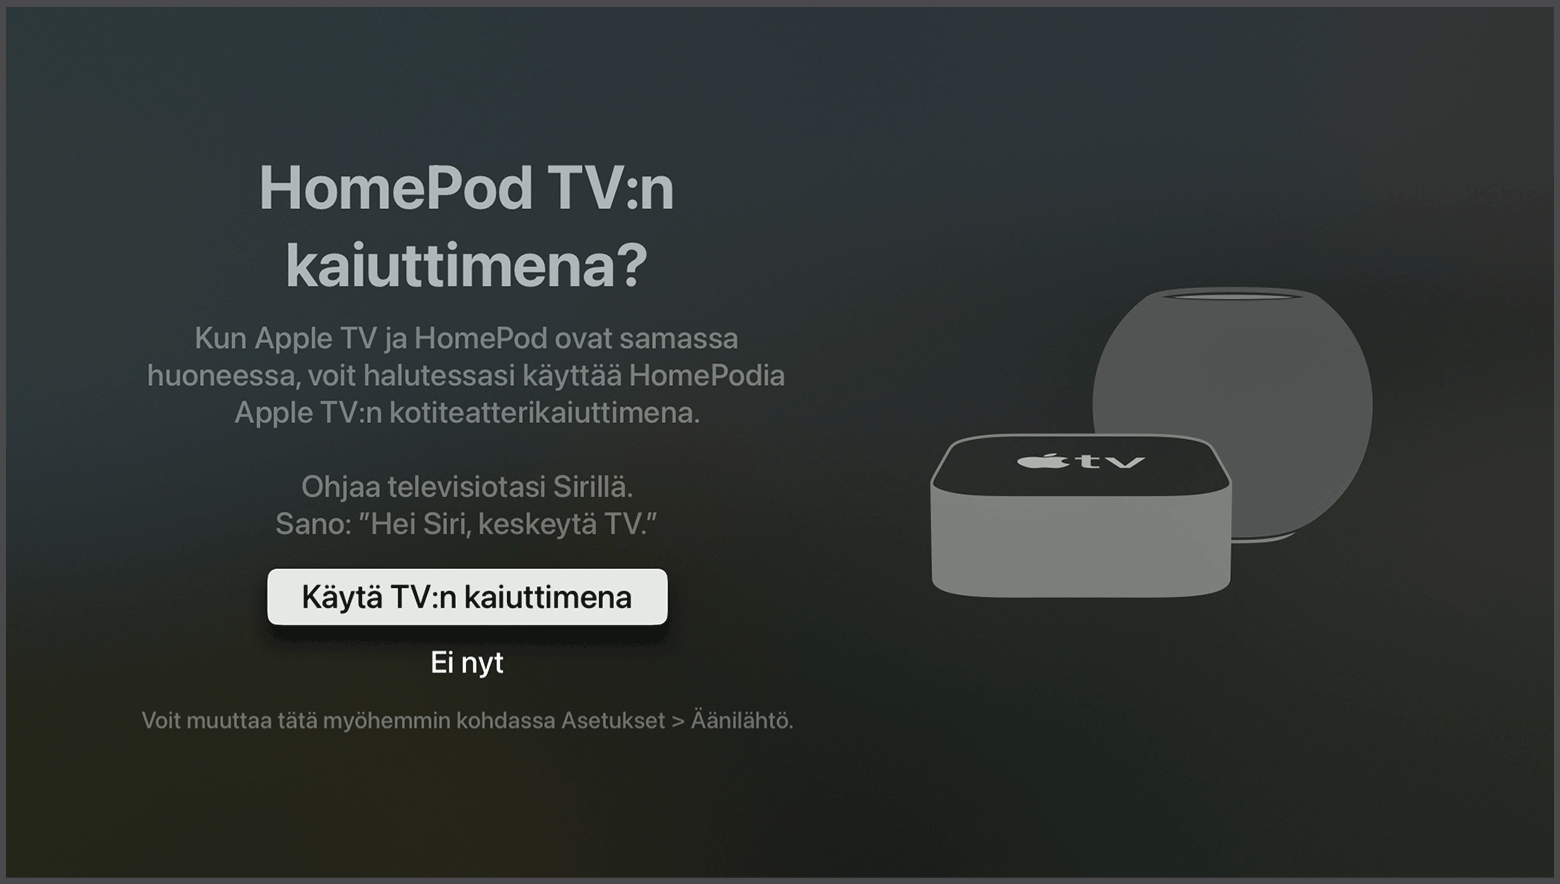 tvOS:n näyttökuva, jossa näkyy kehote käyttää HomePodia Apple TV:n kaiuttimina